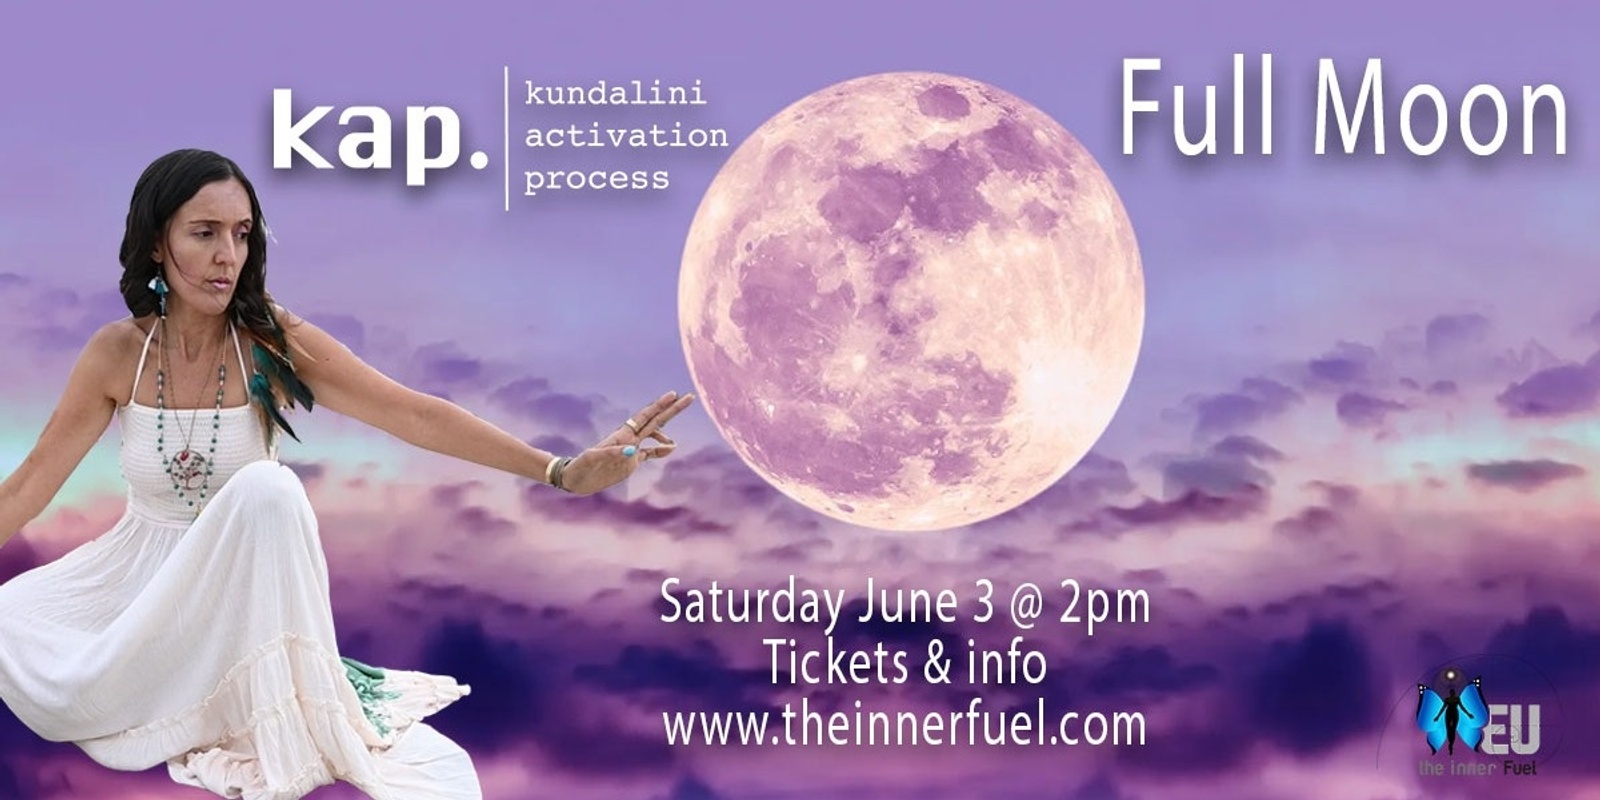 Banner image for VISTA - Full Moon KAP Event June 3